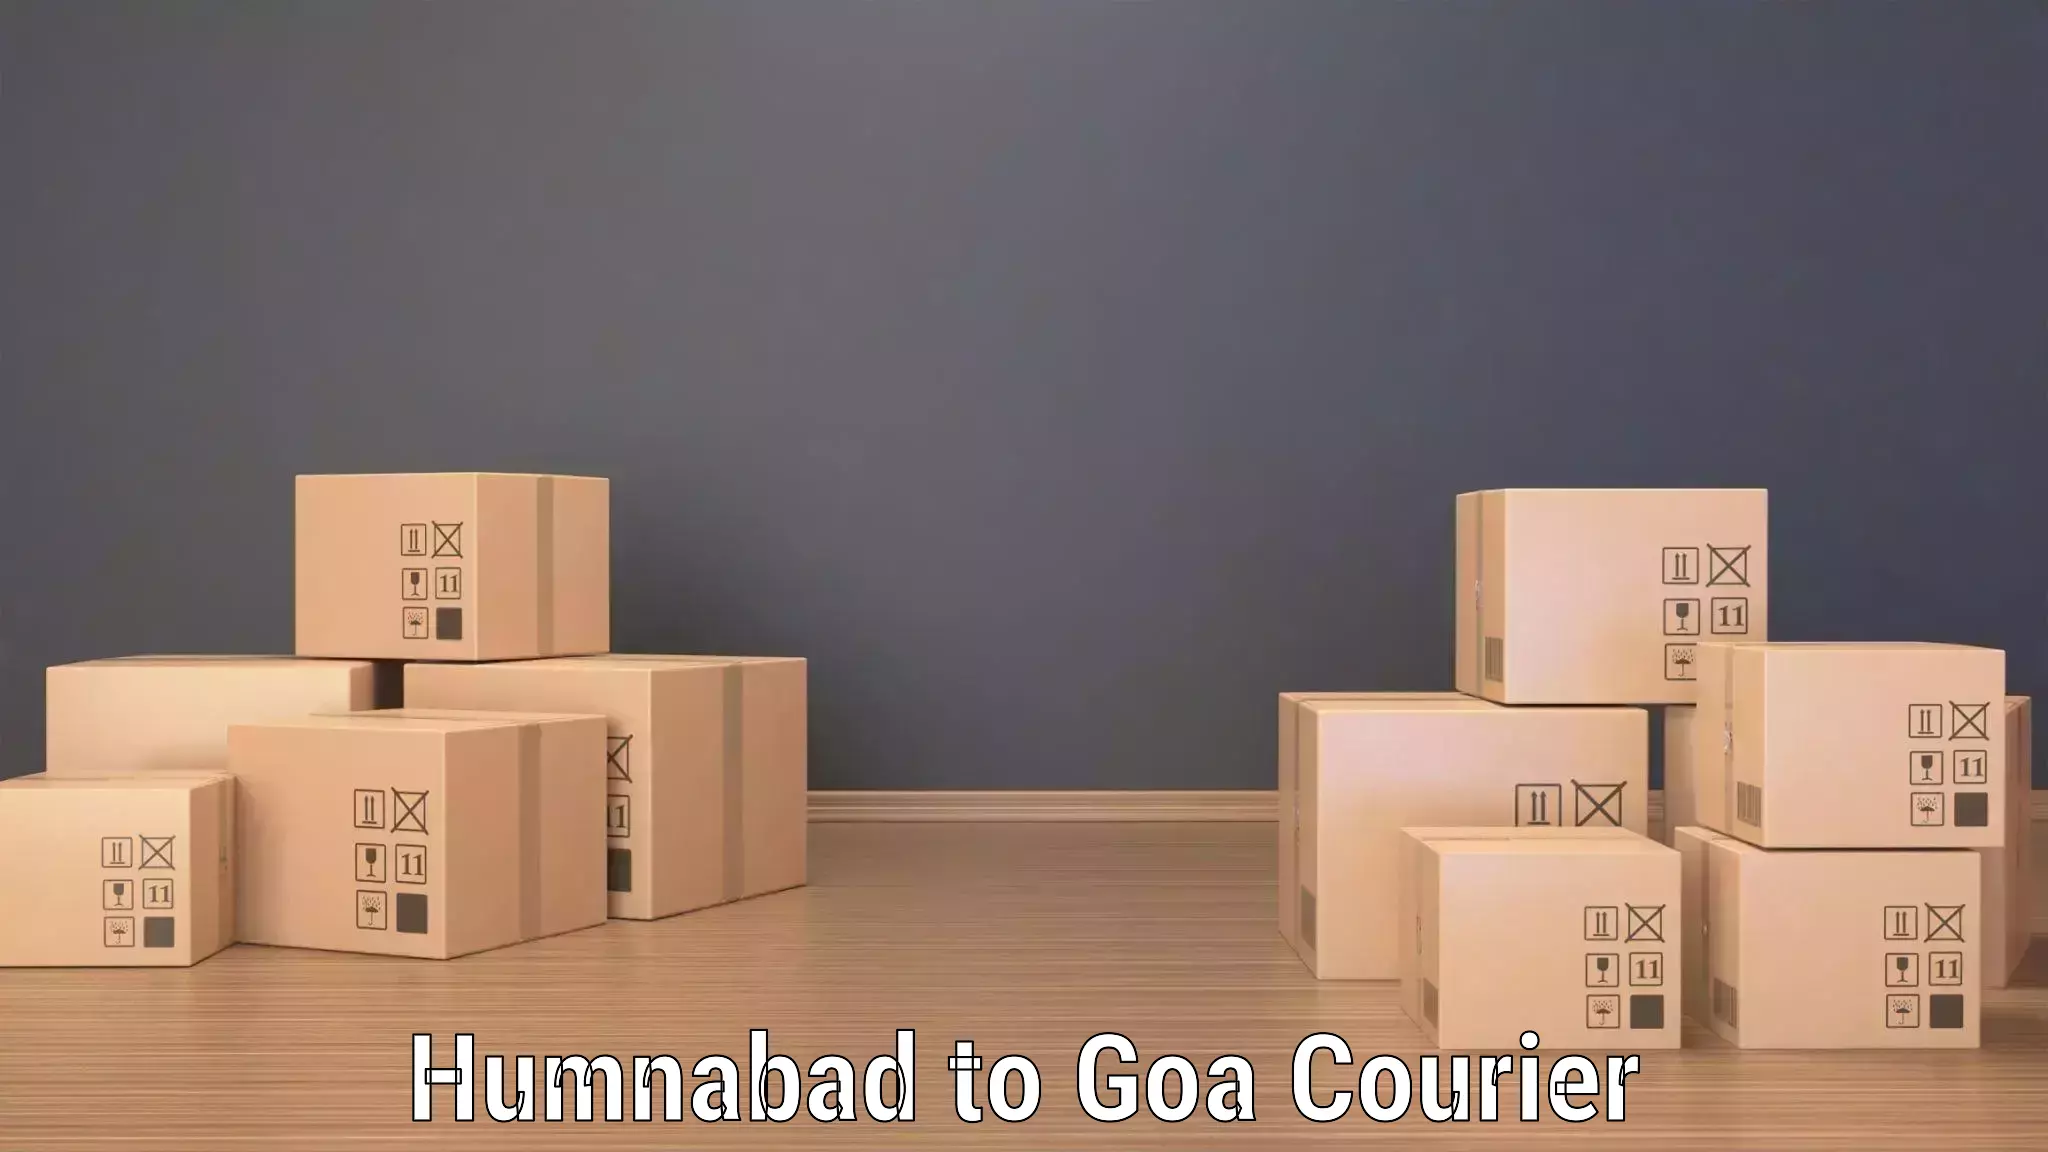 Global shipping networks Humnabad to IIT Goa